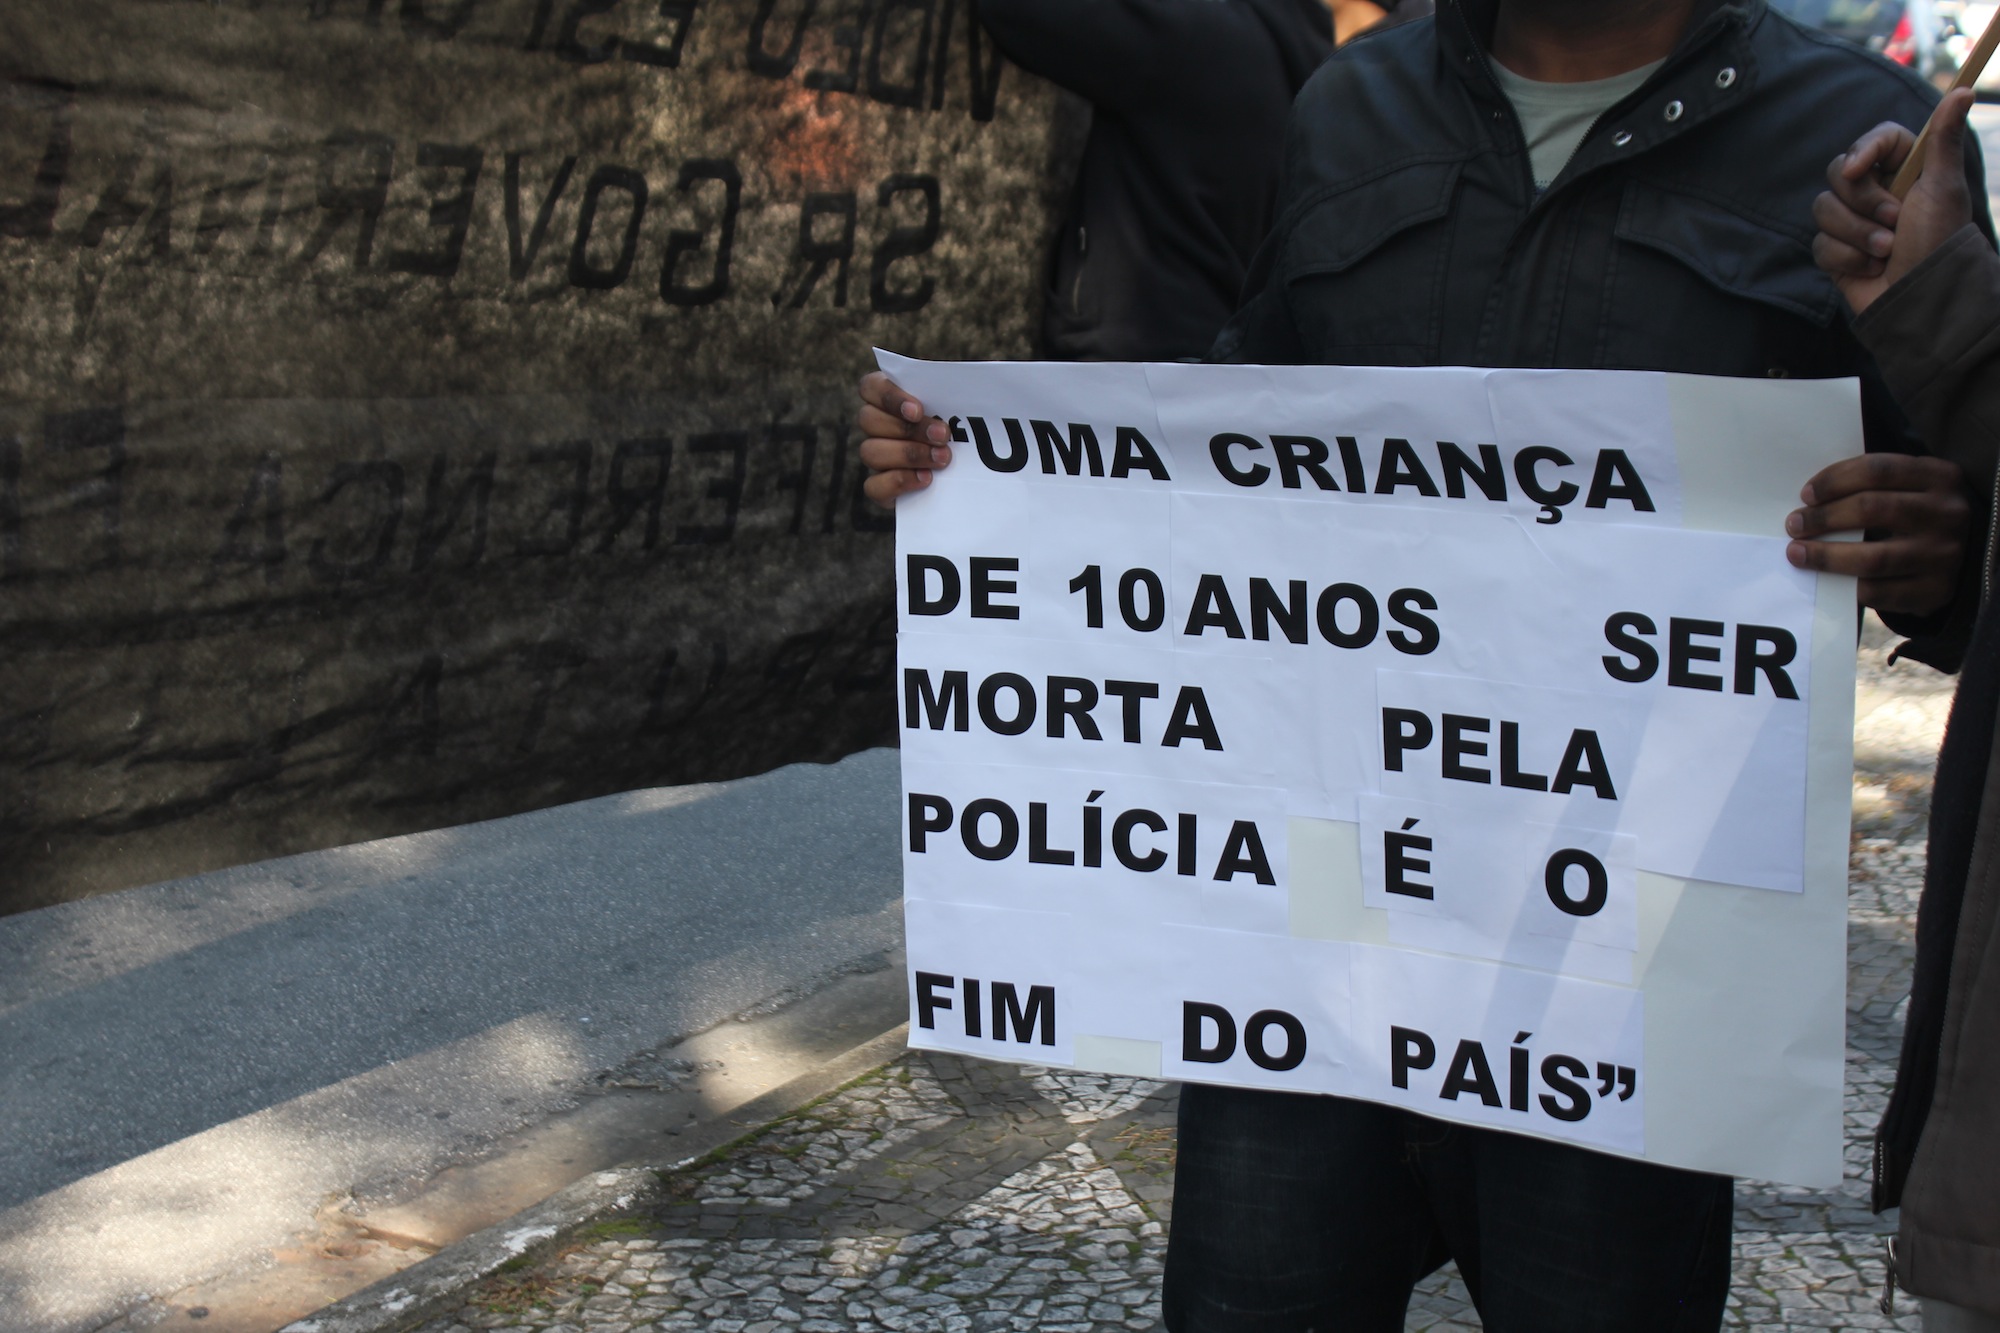 Foto: Thiago Borges / Periferia em Movimento